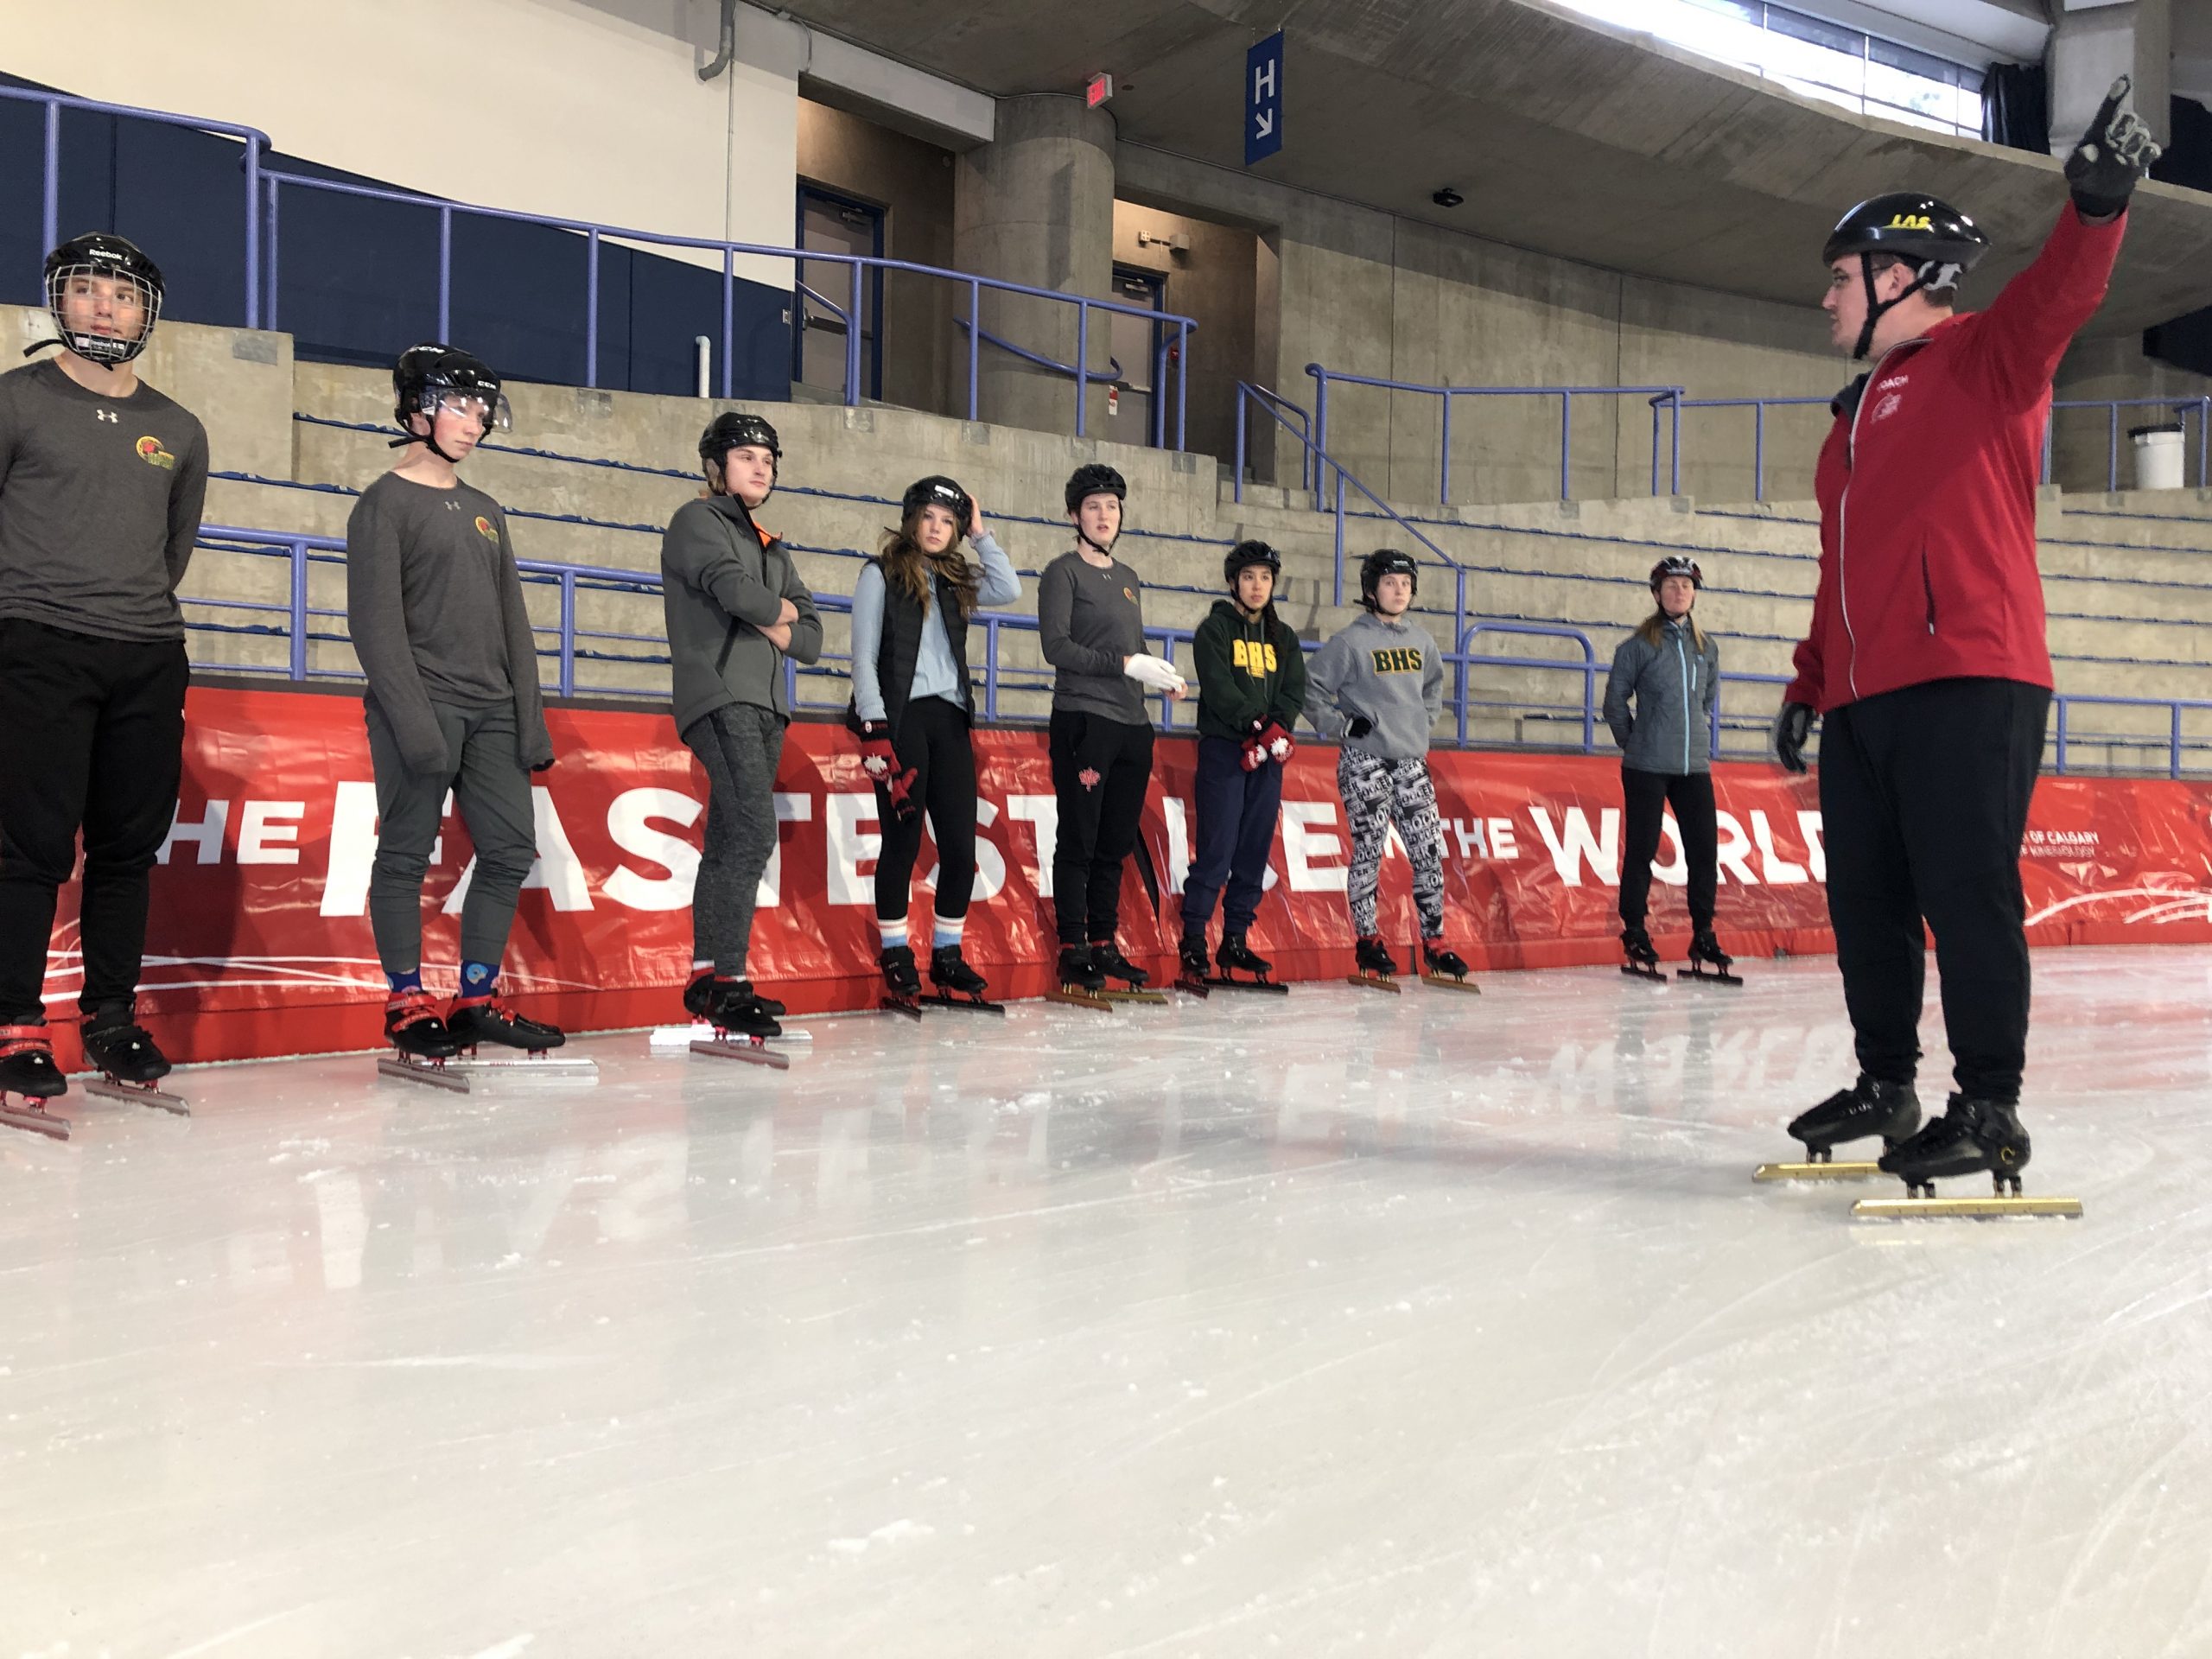 Ryan teaching speed skating